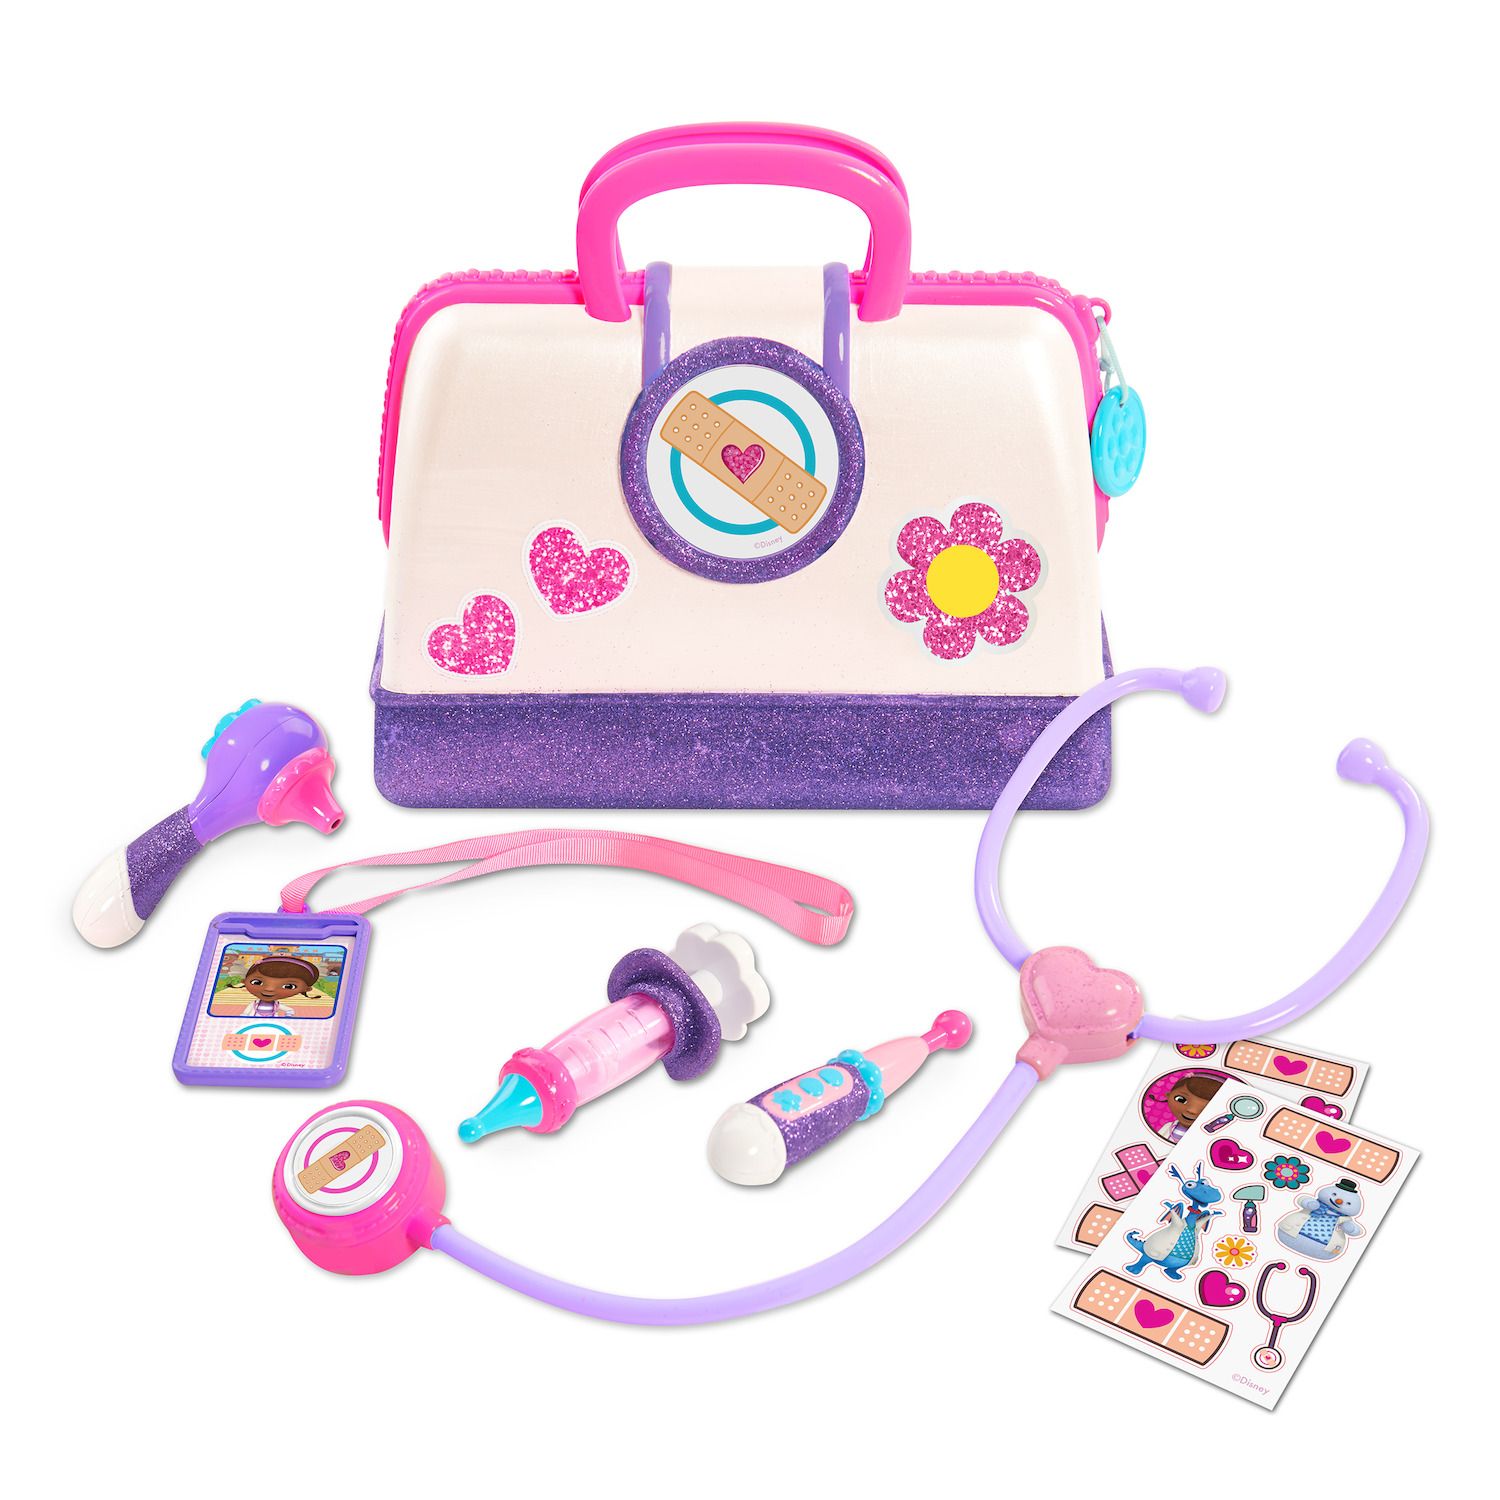 doctor's bag set toy